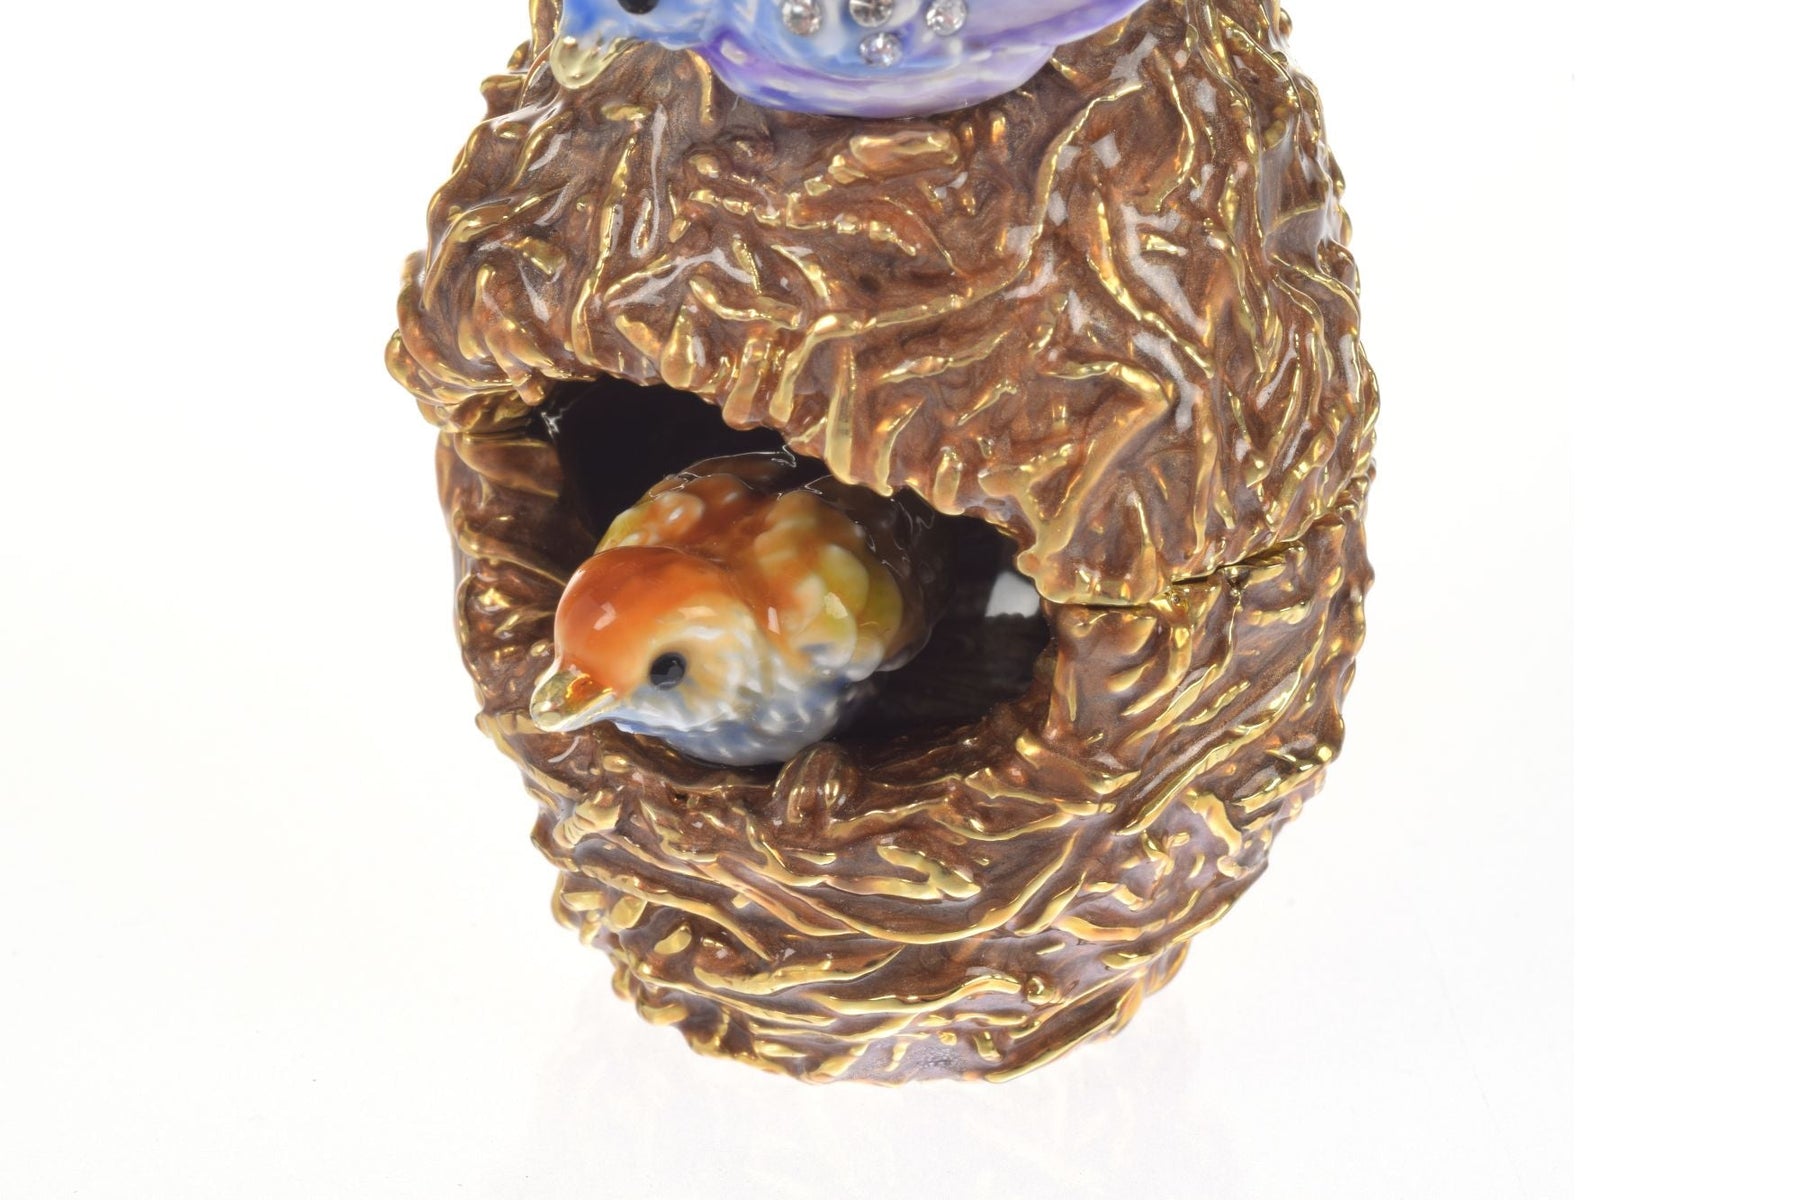 Boîte à bijoux avec deux tourtereaux dans un nid